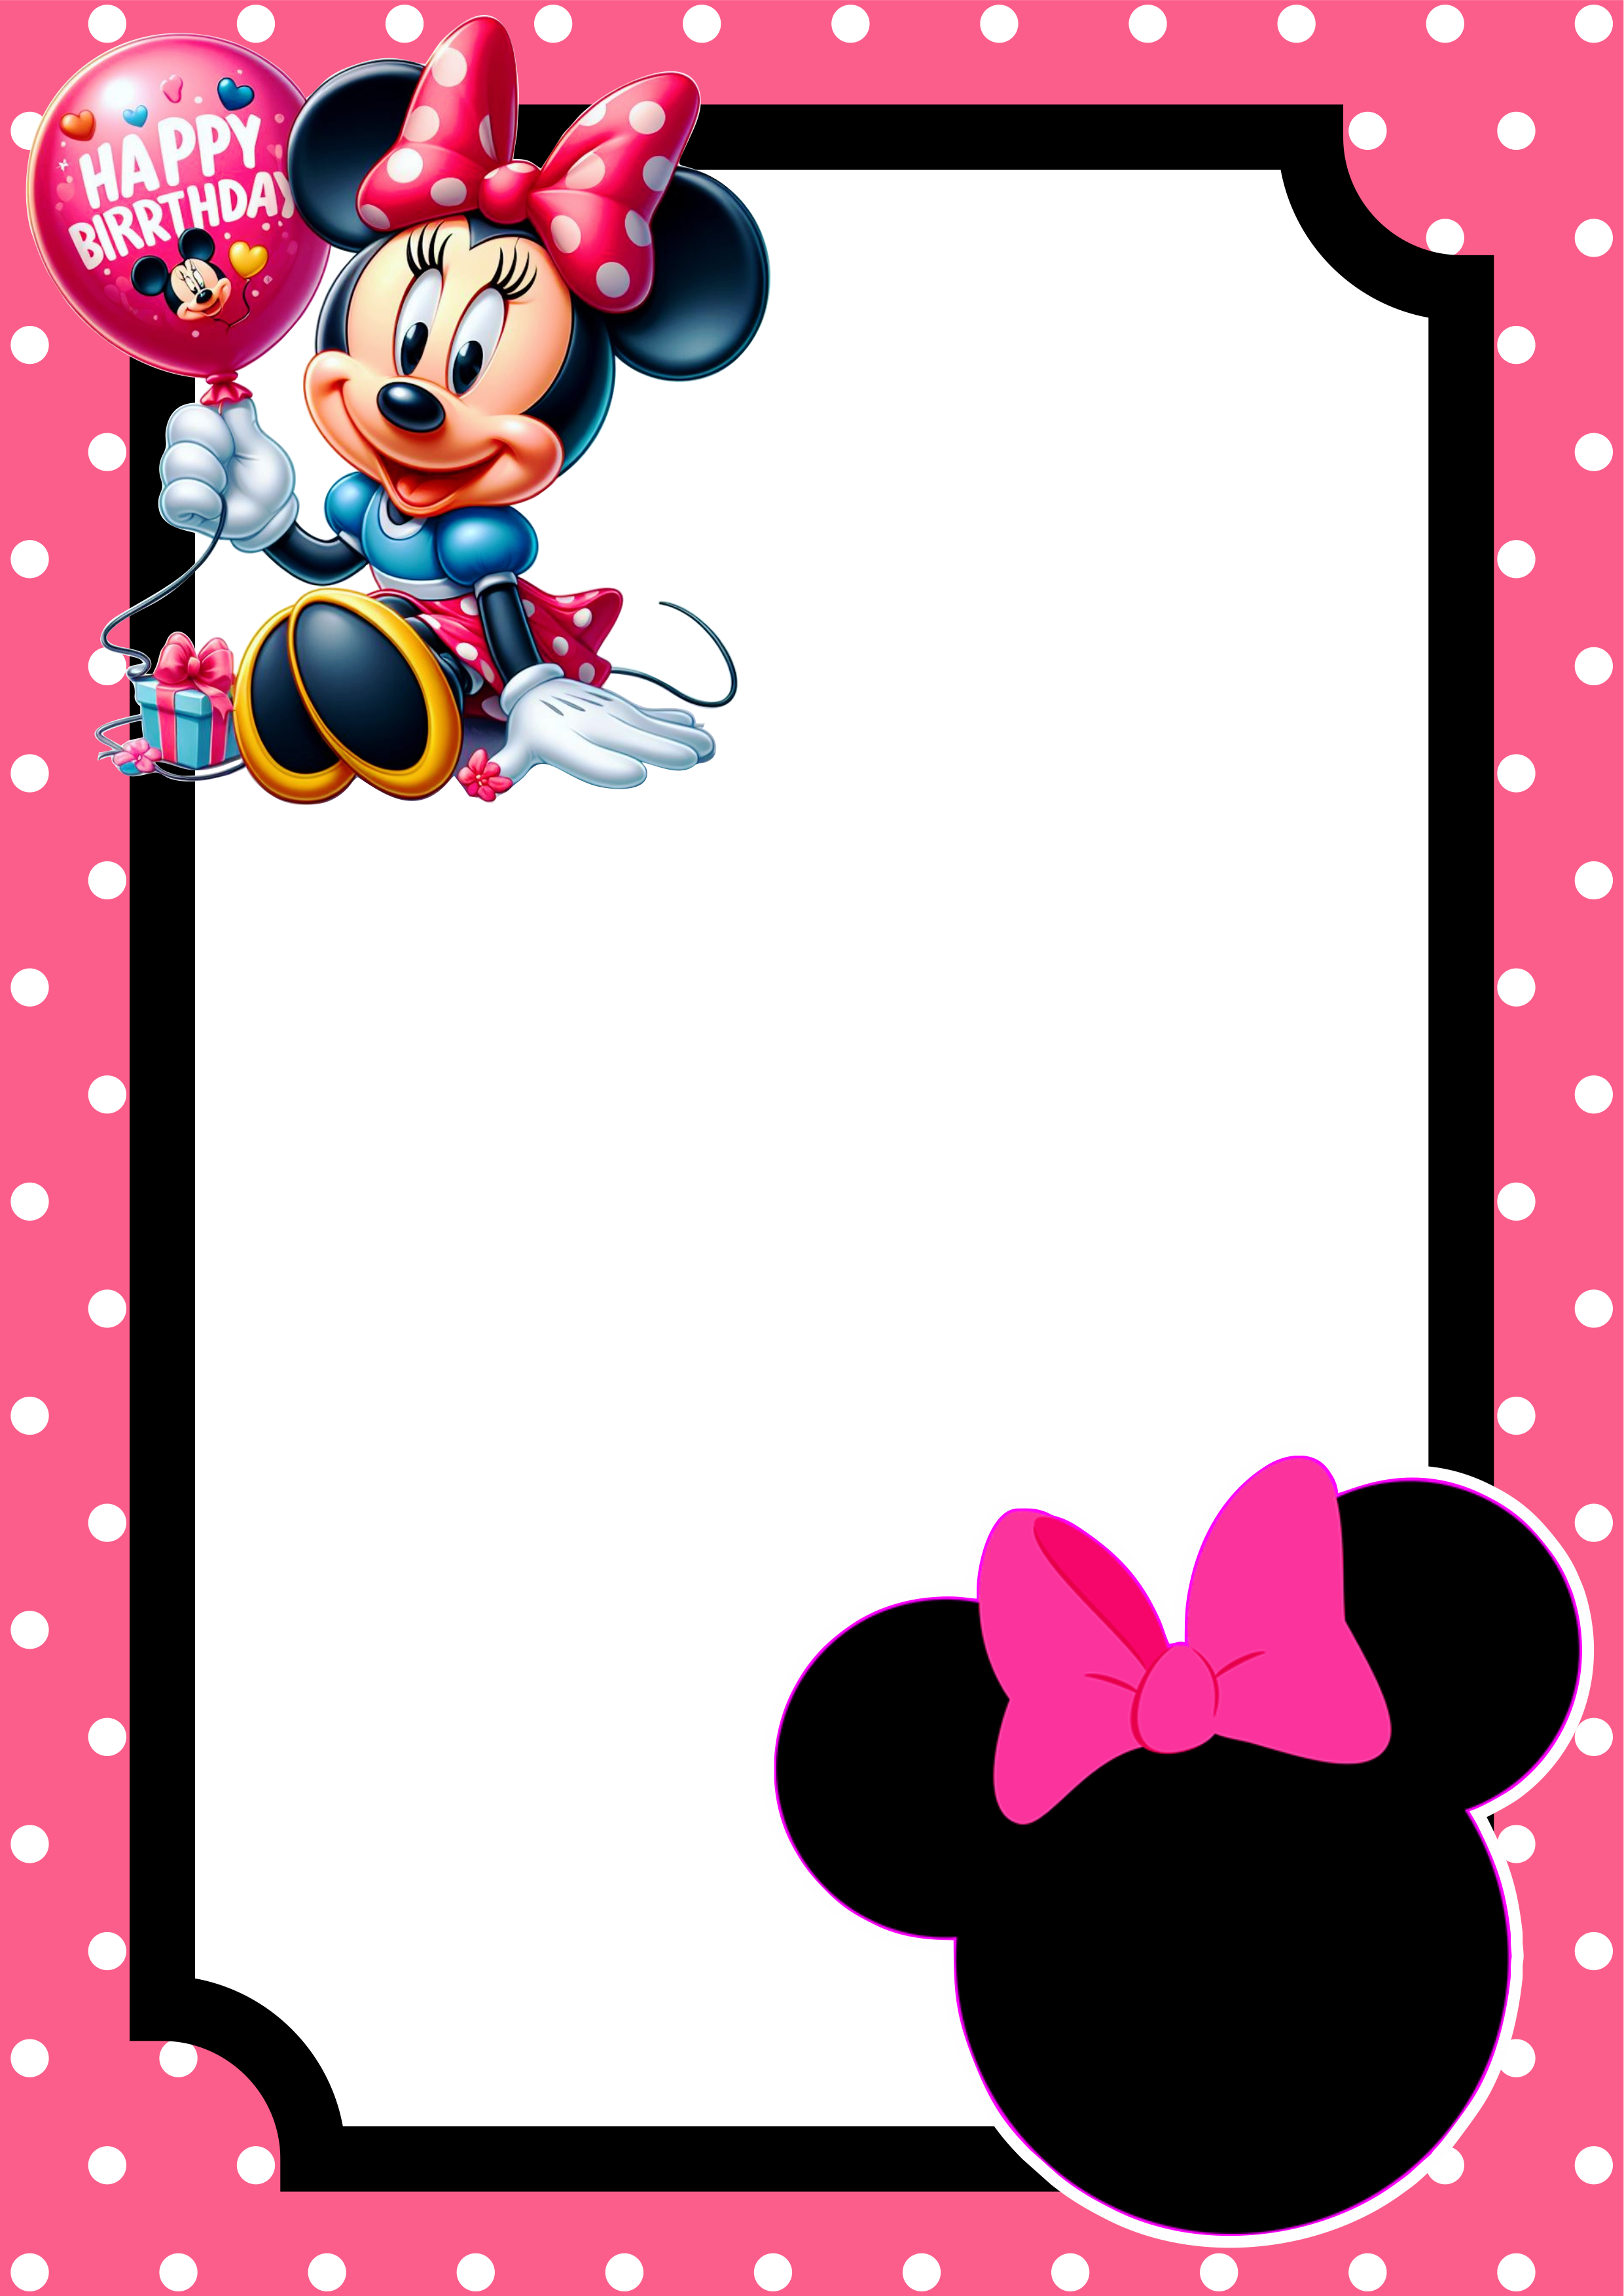 Convite virtual Minnie rosa molde pronto para editar e imprimir festa aniversário infantil Disney renda extra com personalizados png